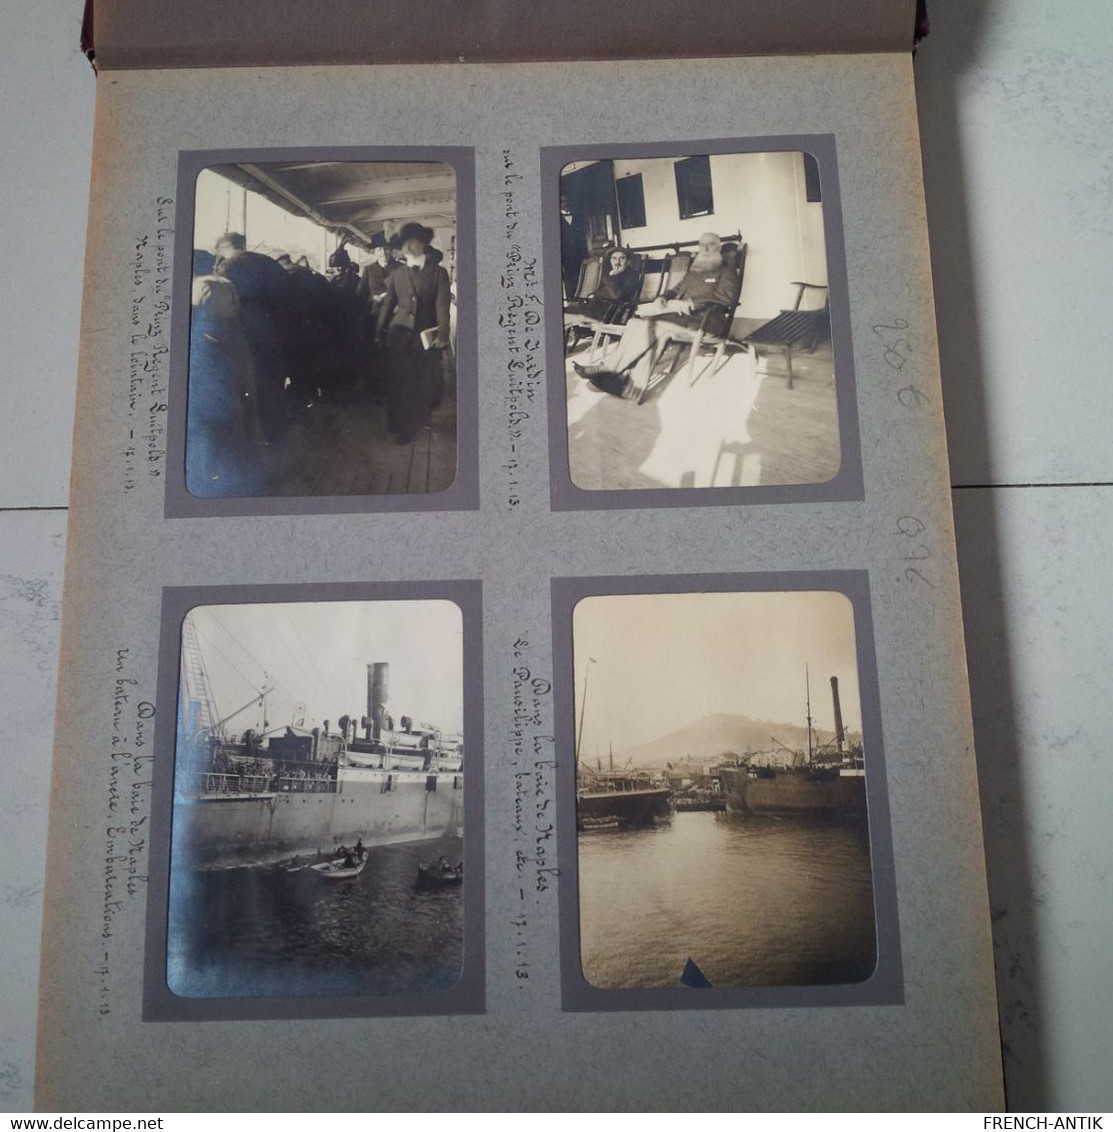 ALBUM PHOTO VOYAGE BATEAU PRINZ REGENT LUITPOLD NAPLES ALEXANDRIE PYRAMIDE HELIOPOLIS KAFR EL DAWWAR 1913 - Alben & Sammlungen